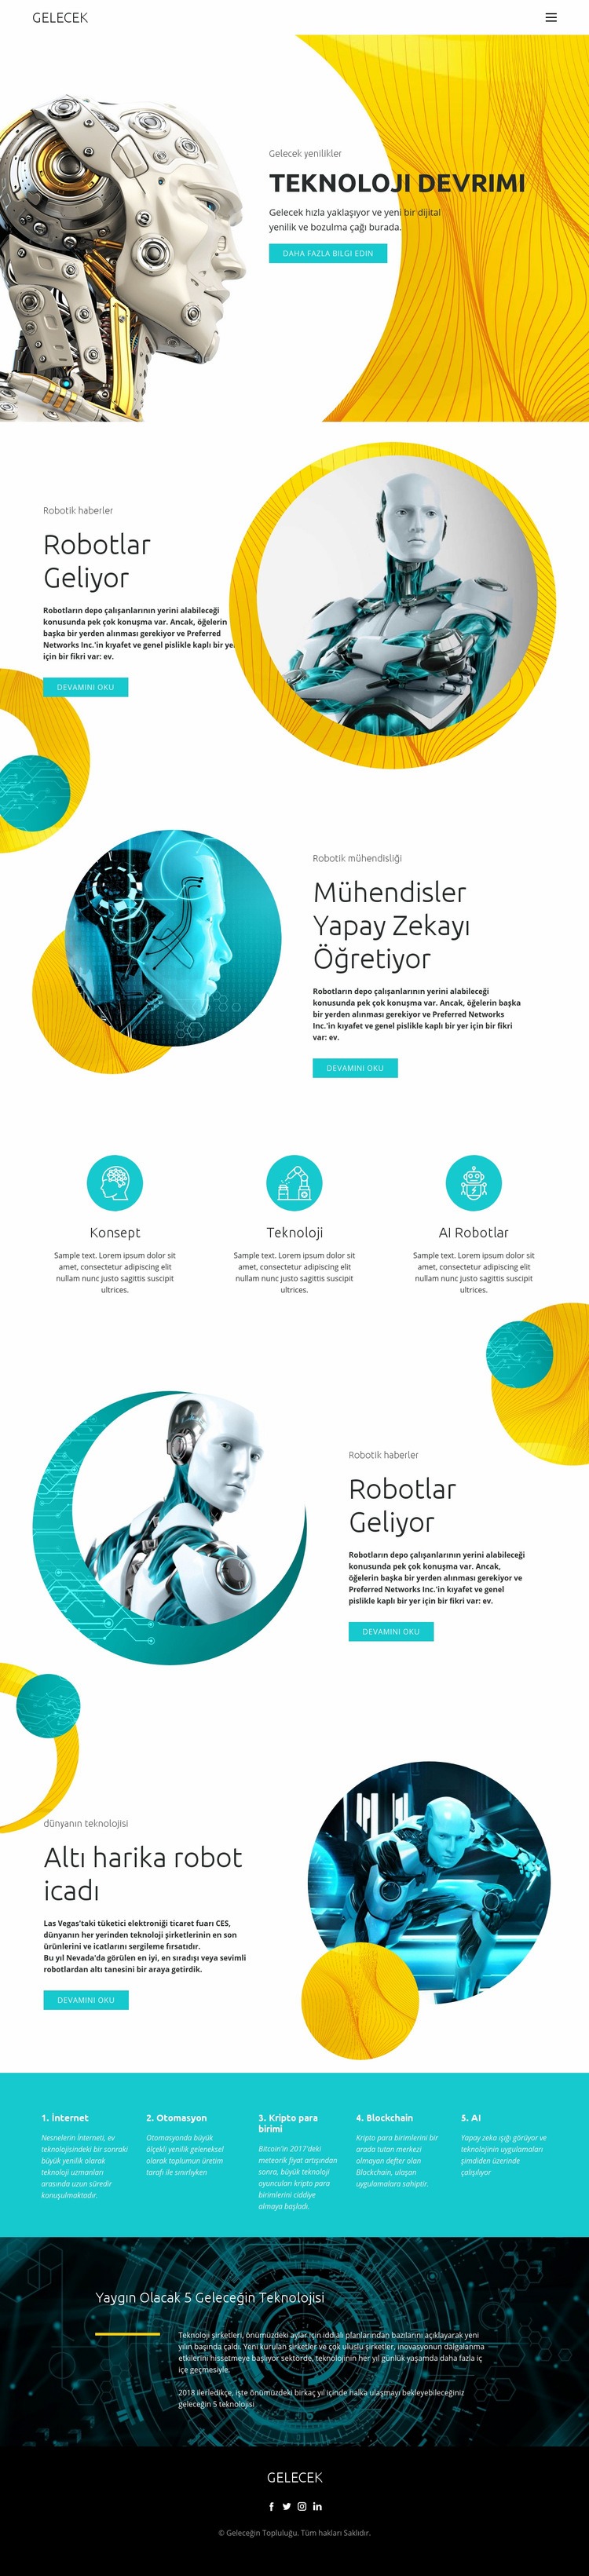 Robot teknolojisinde ilerleme Web sitesi tasarımı